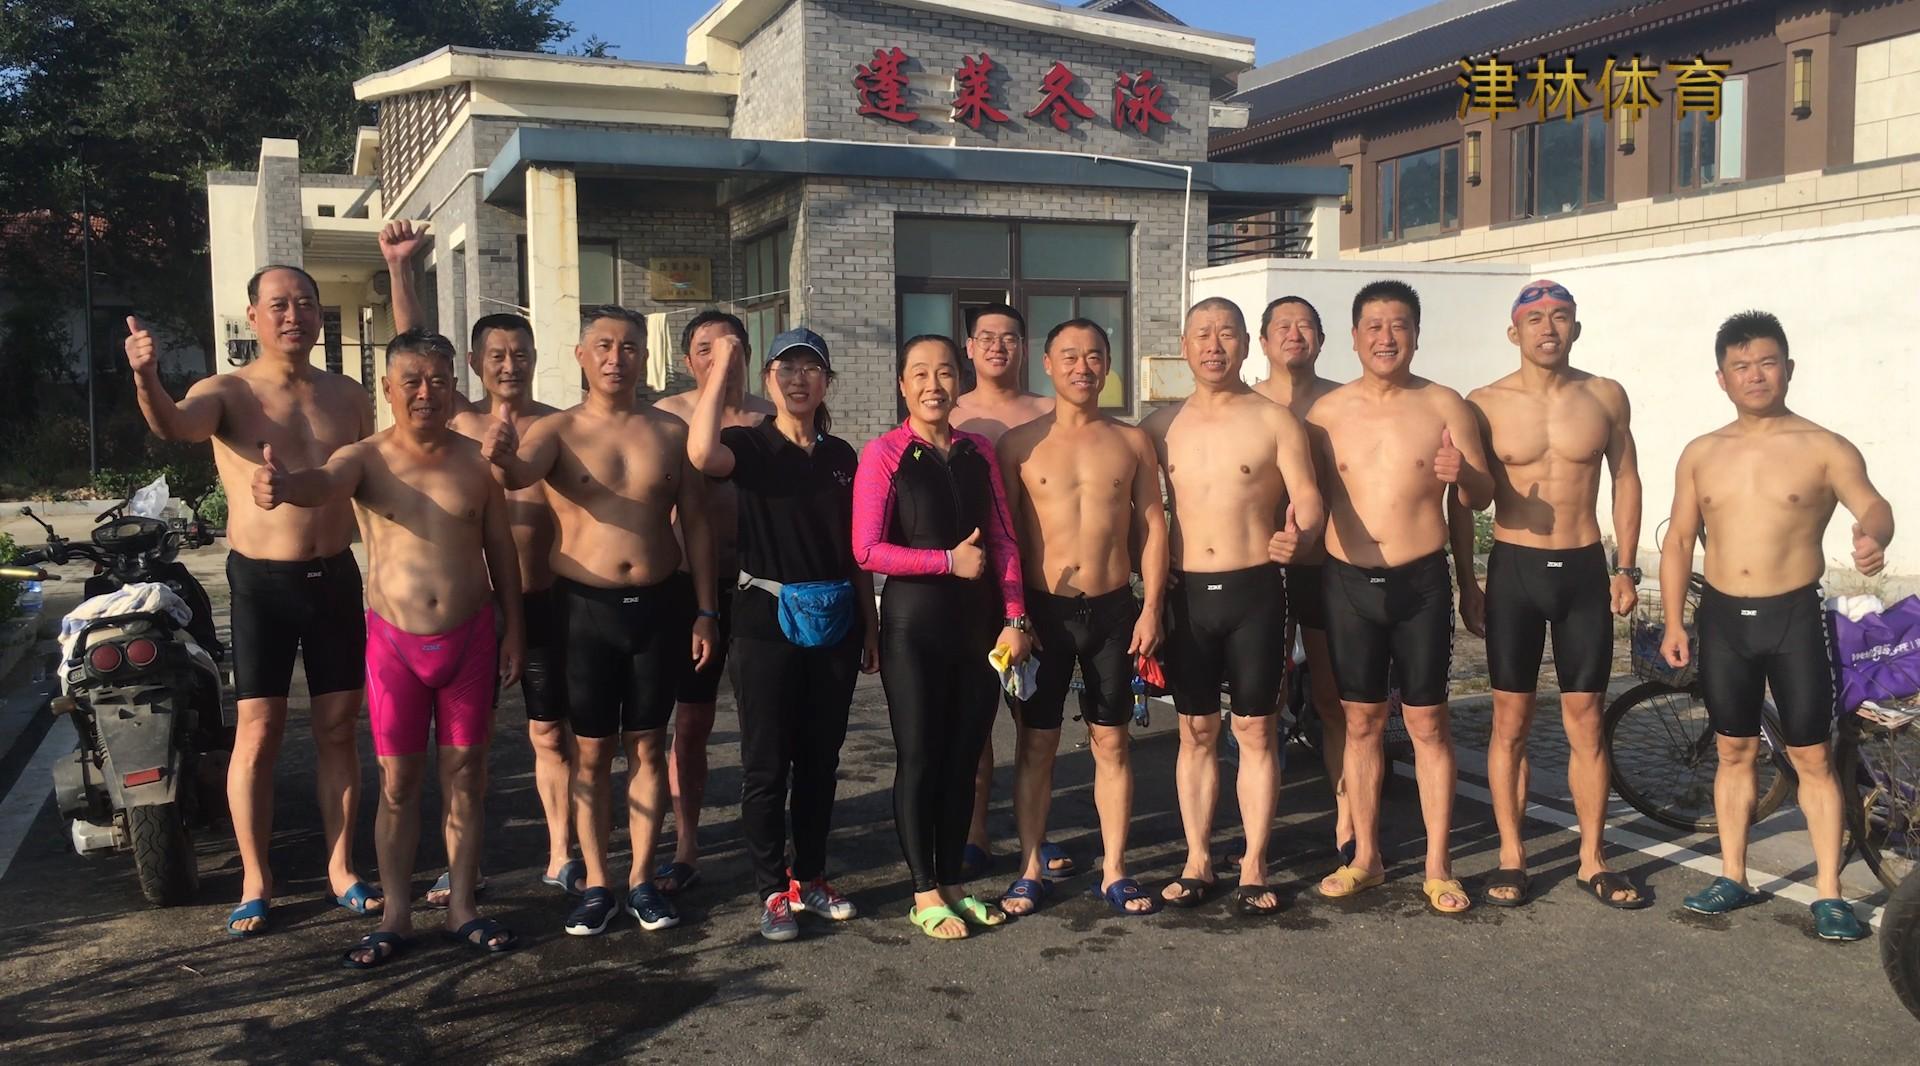 浪花里的快乐 — 蓬莱市津林冬泳俱乐部活动记实